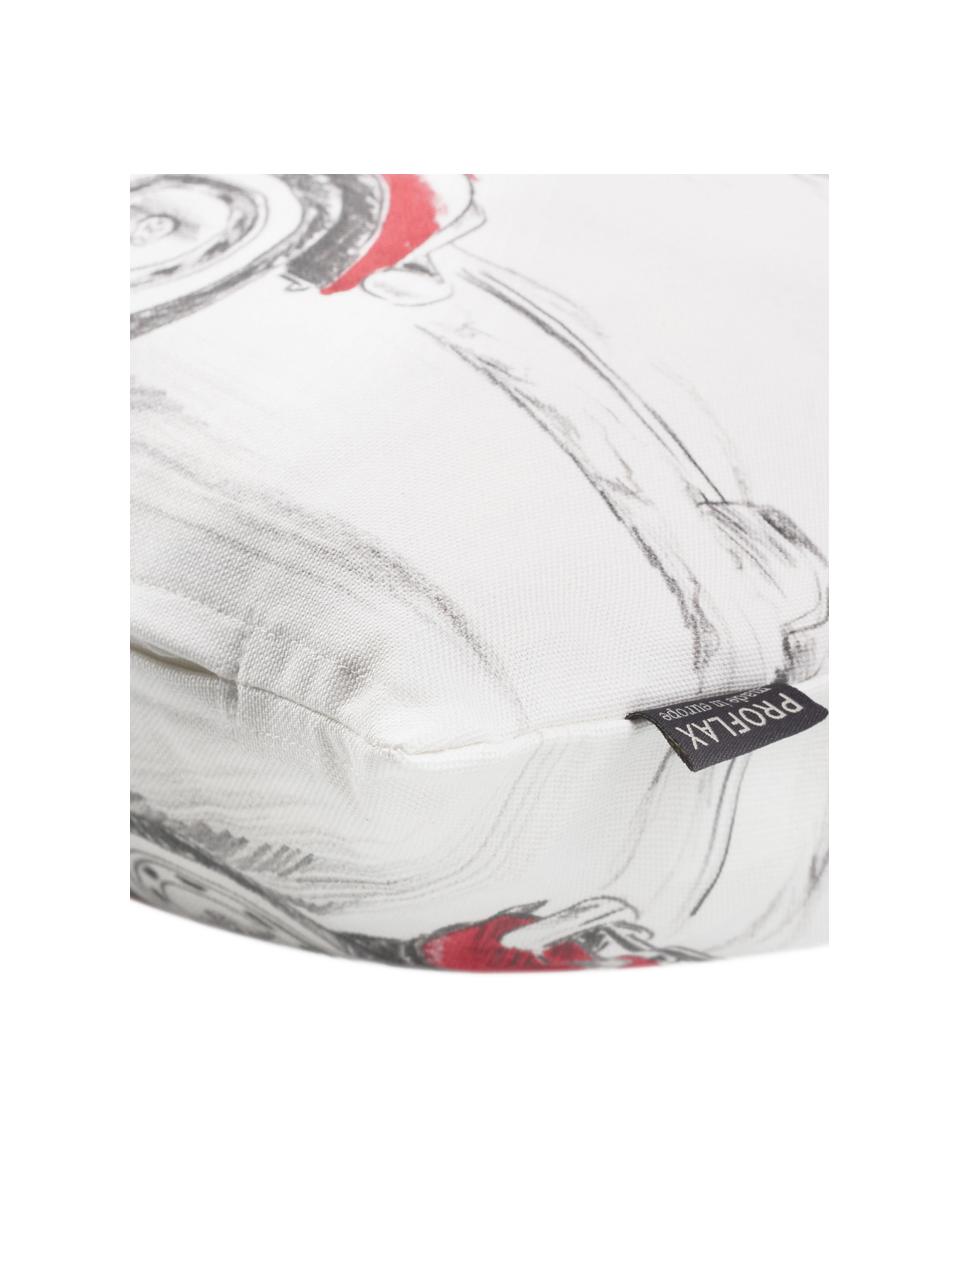 Federa arredo con motivo auto Dodo, 100% cotone, Bianco, rosso, grigio, Larg. 30 x Lung. 50 cm